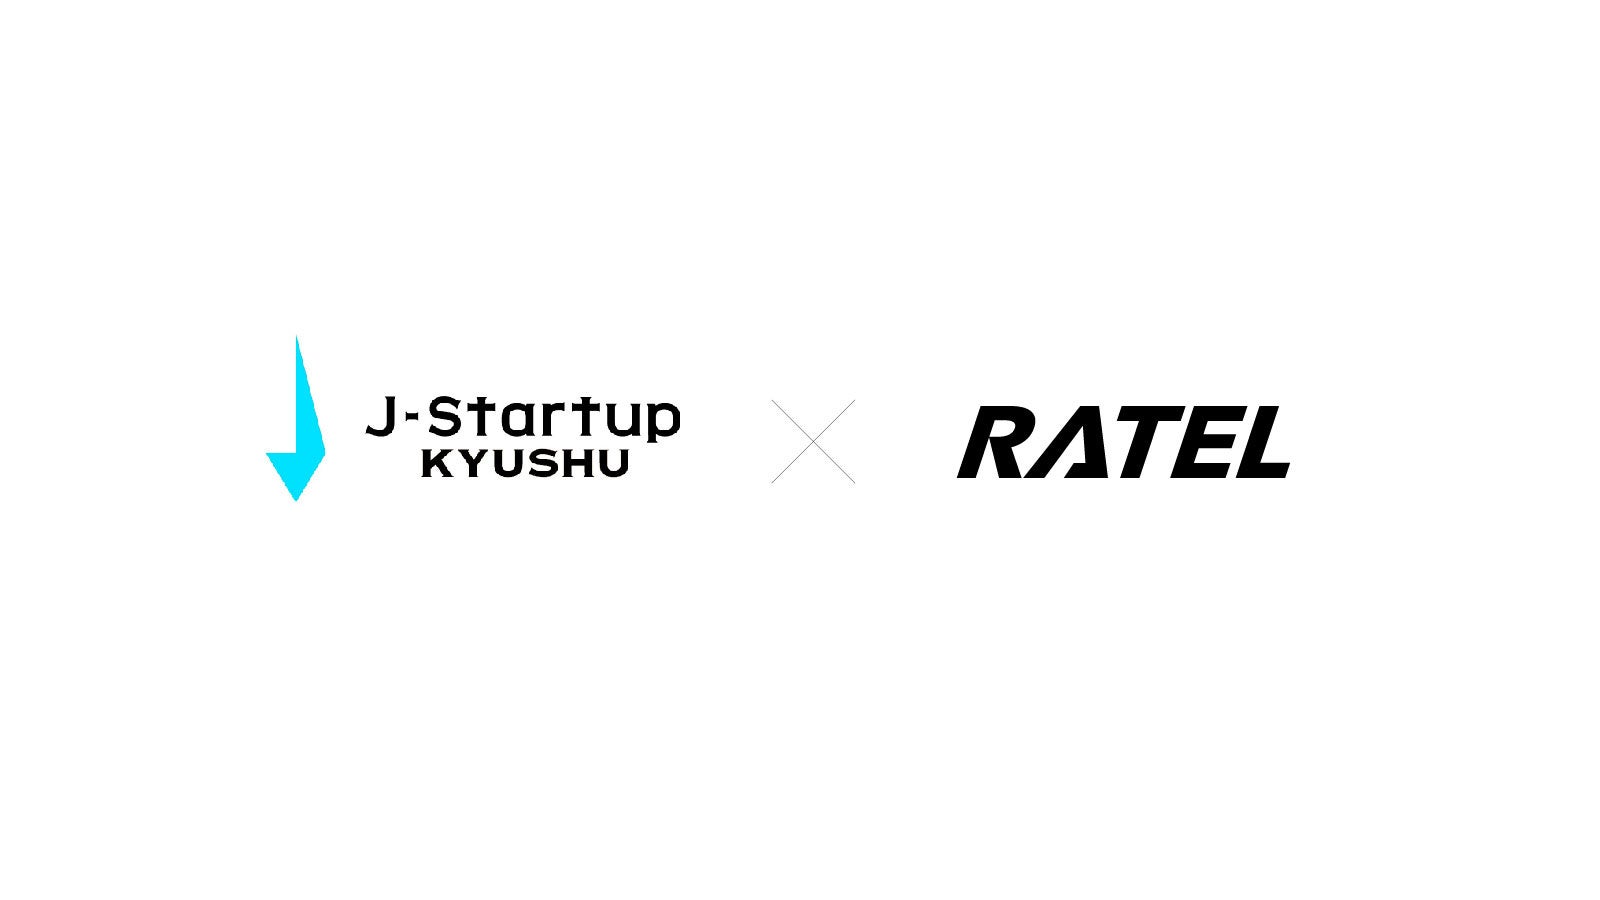 eスポーツスタートアップのRATELがJ-Startup KYUSHU企業として選定されました。